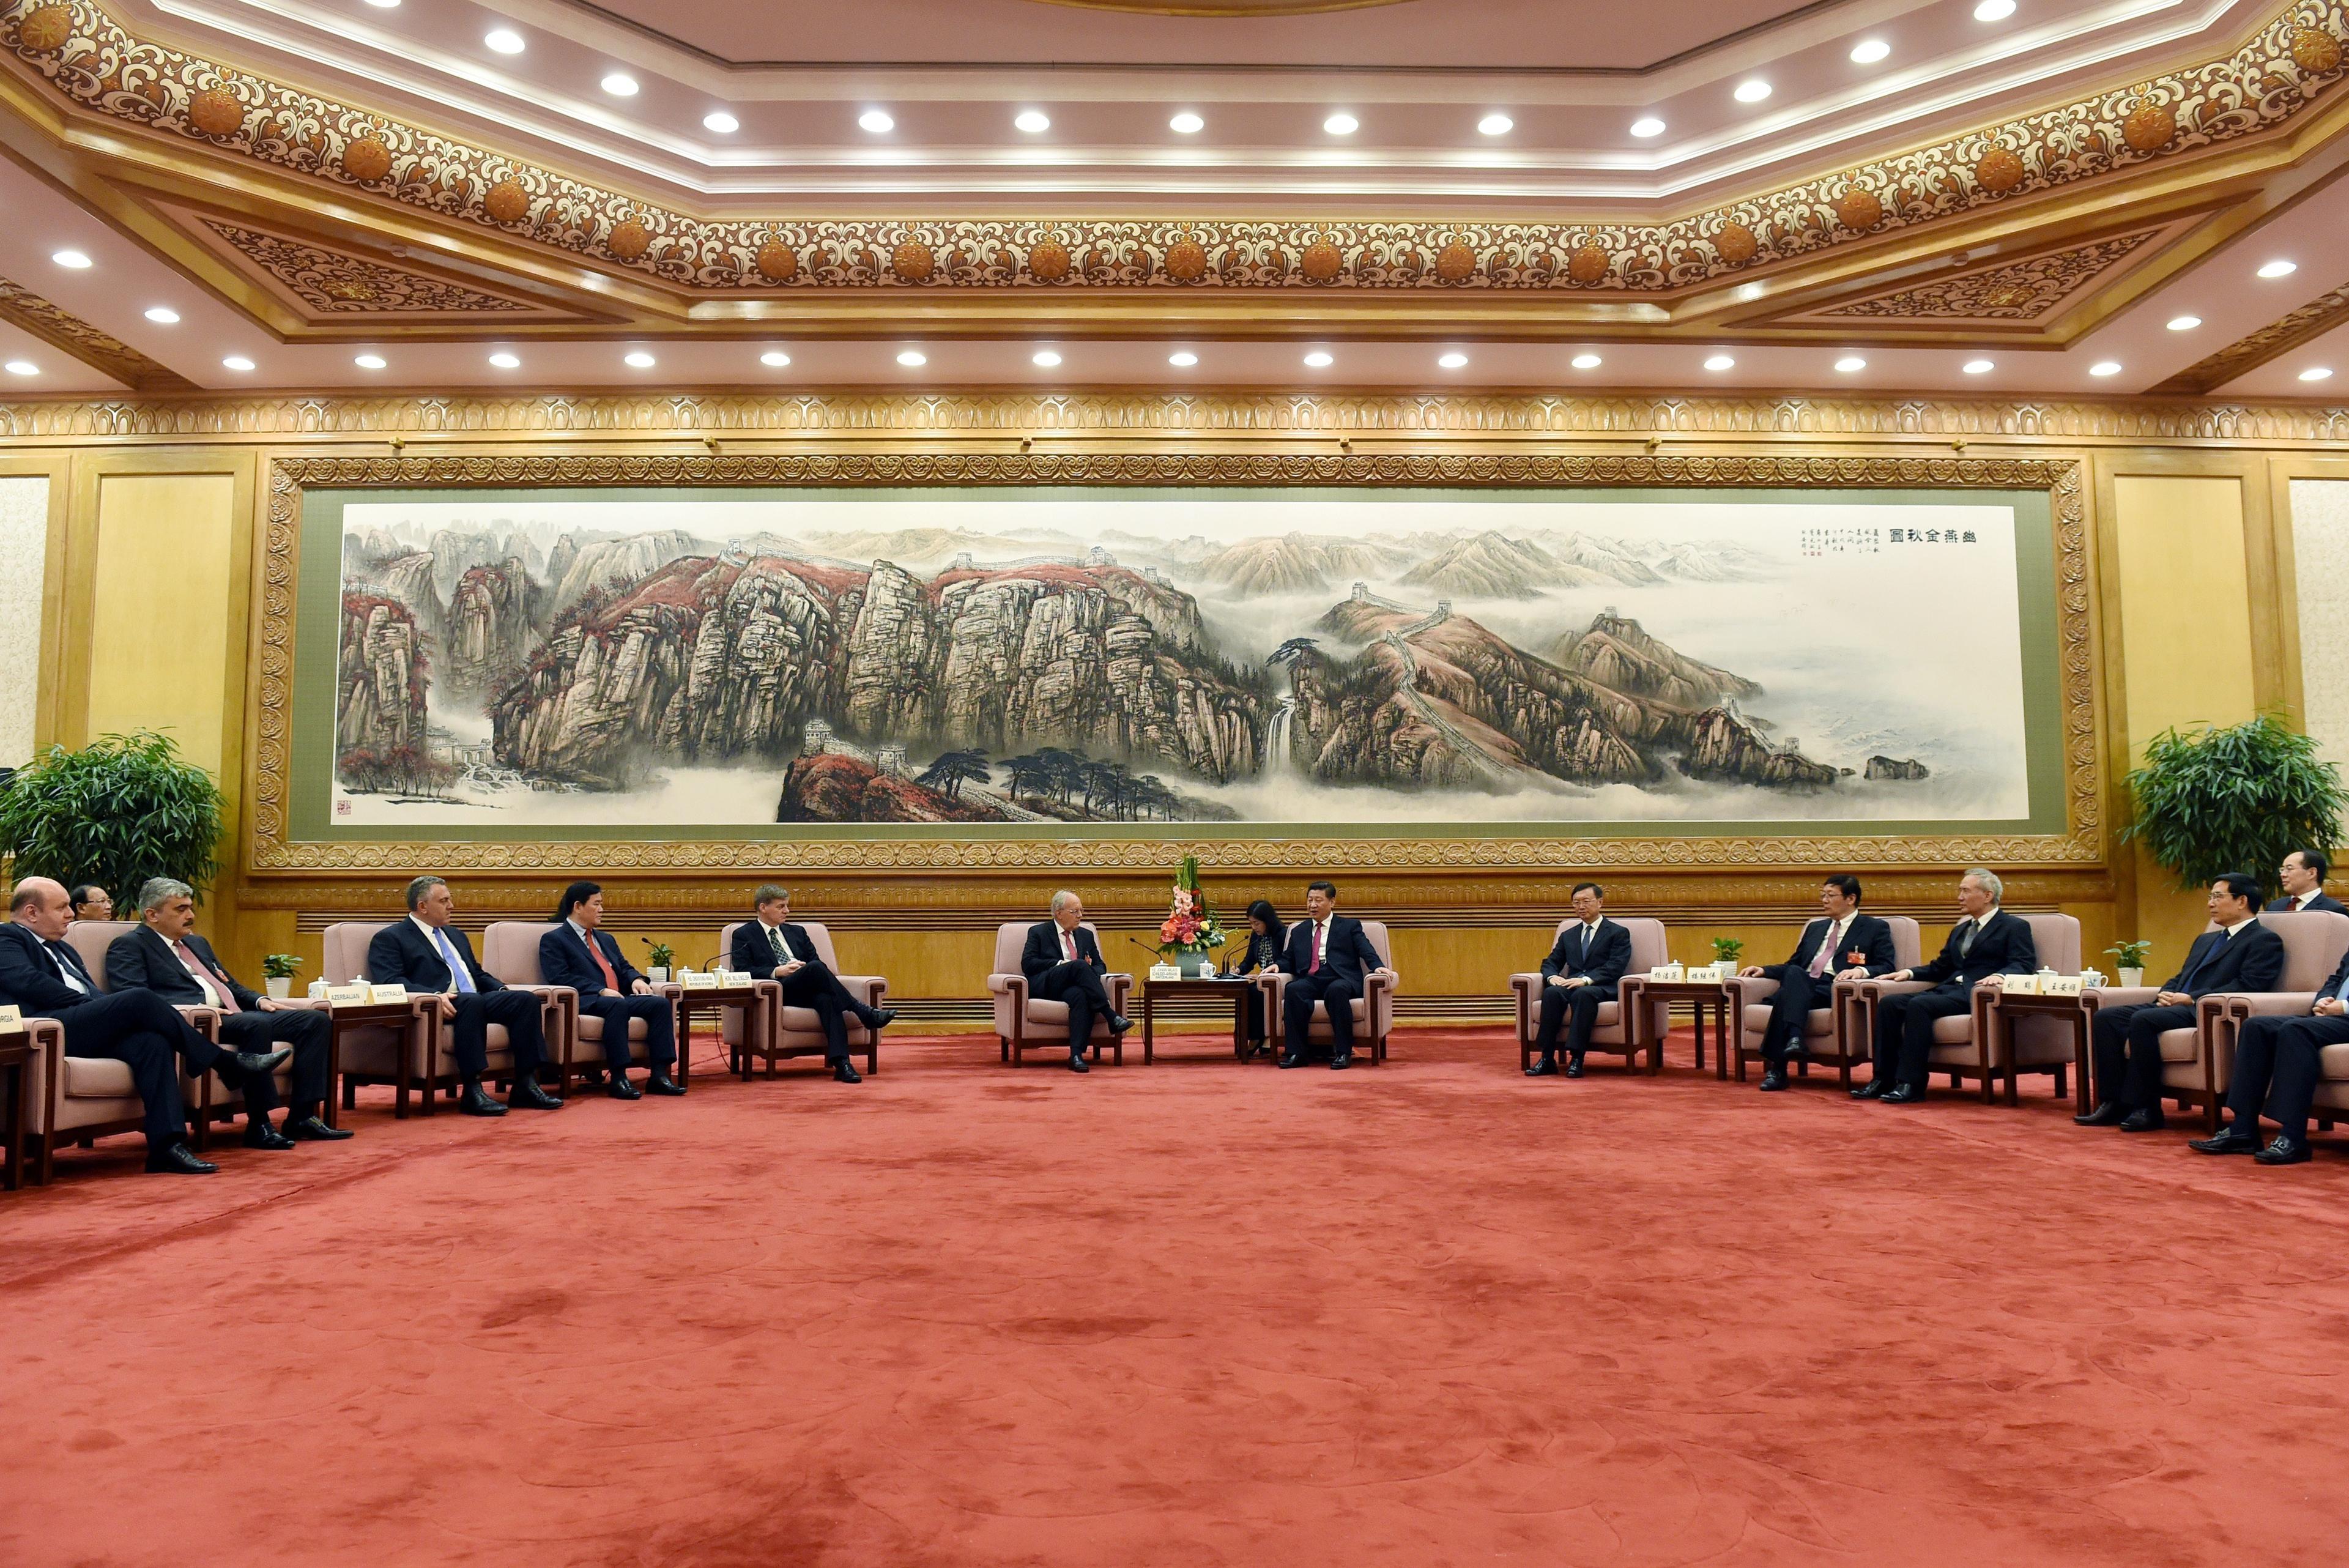  Kinas president Xi Jinping (mitten till höger) möter delegaterna som deltar i ceremonin för avsiktsförklaring med löfte om de skulle ansluta sig till Asian Infrastructure Investment Bank (AIIB) vid Folkets stora hall i Peking den 29 juni, 2015. (Foto: Wang Zhao /AFP/ Getty Images)